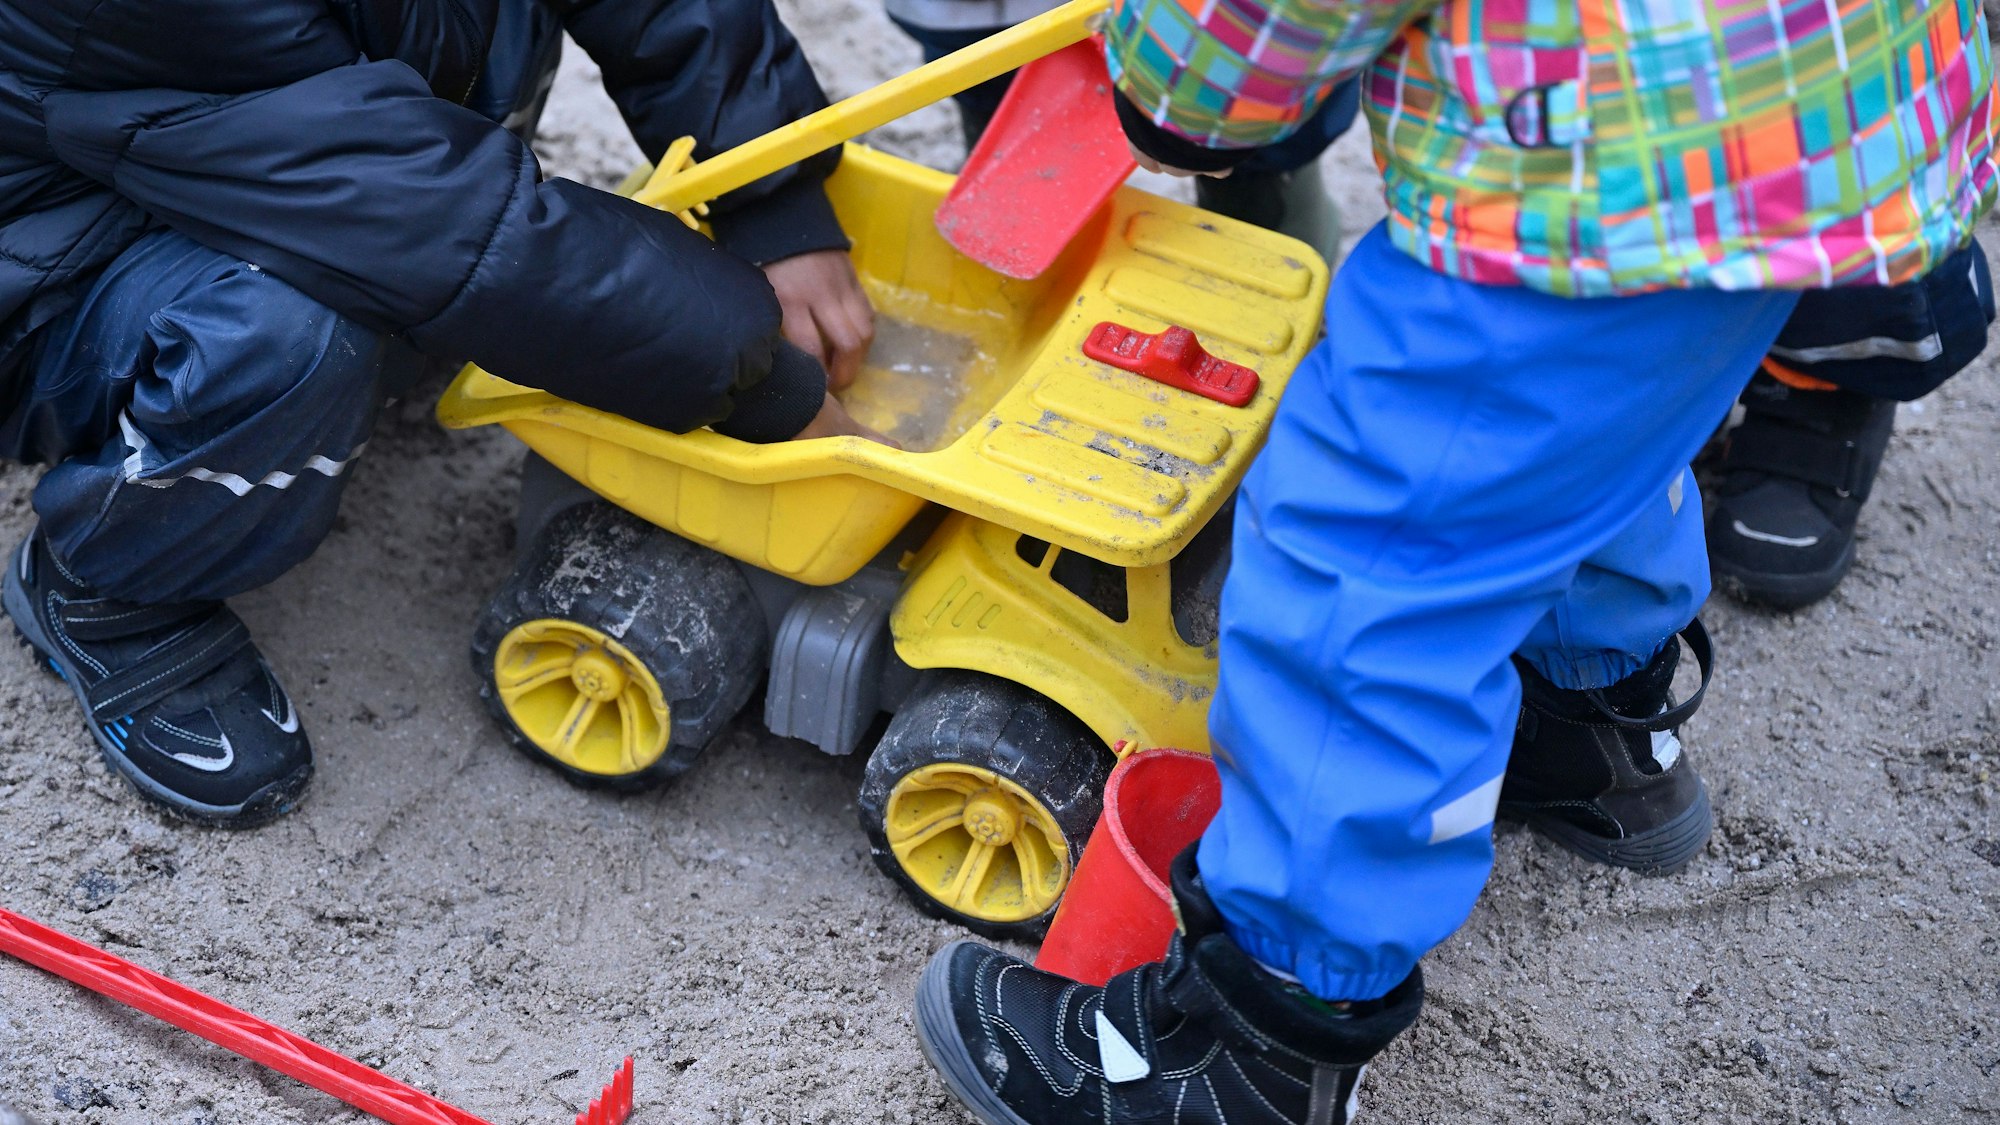 Kinder spielen mit einem gelben Spielzeugbagger im Sand.